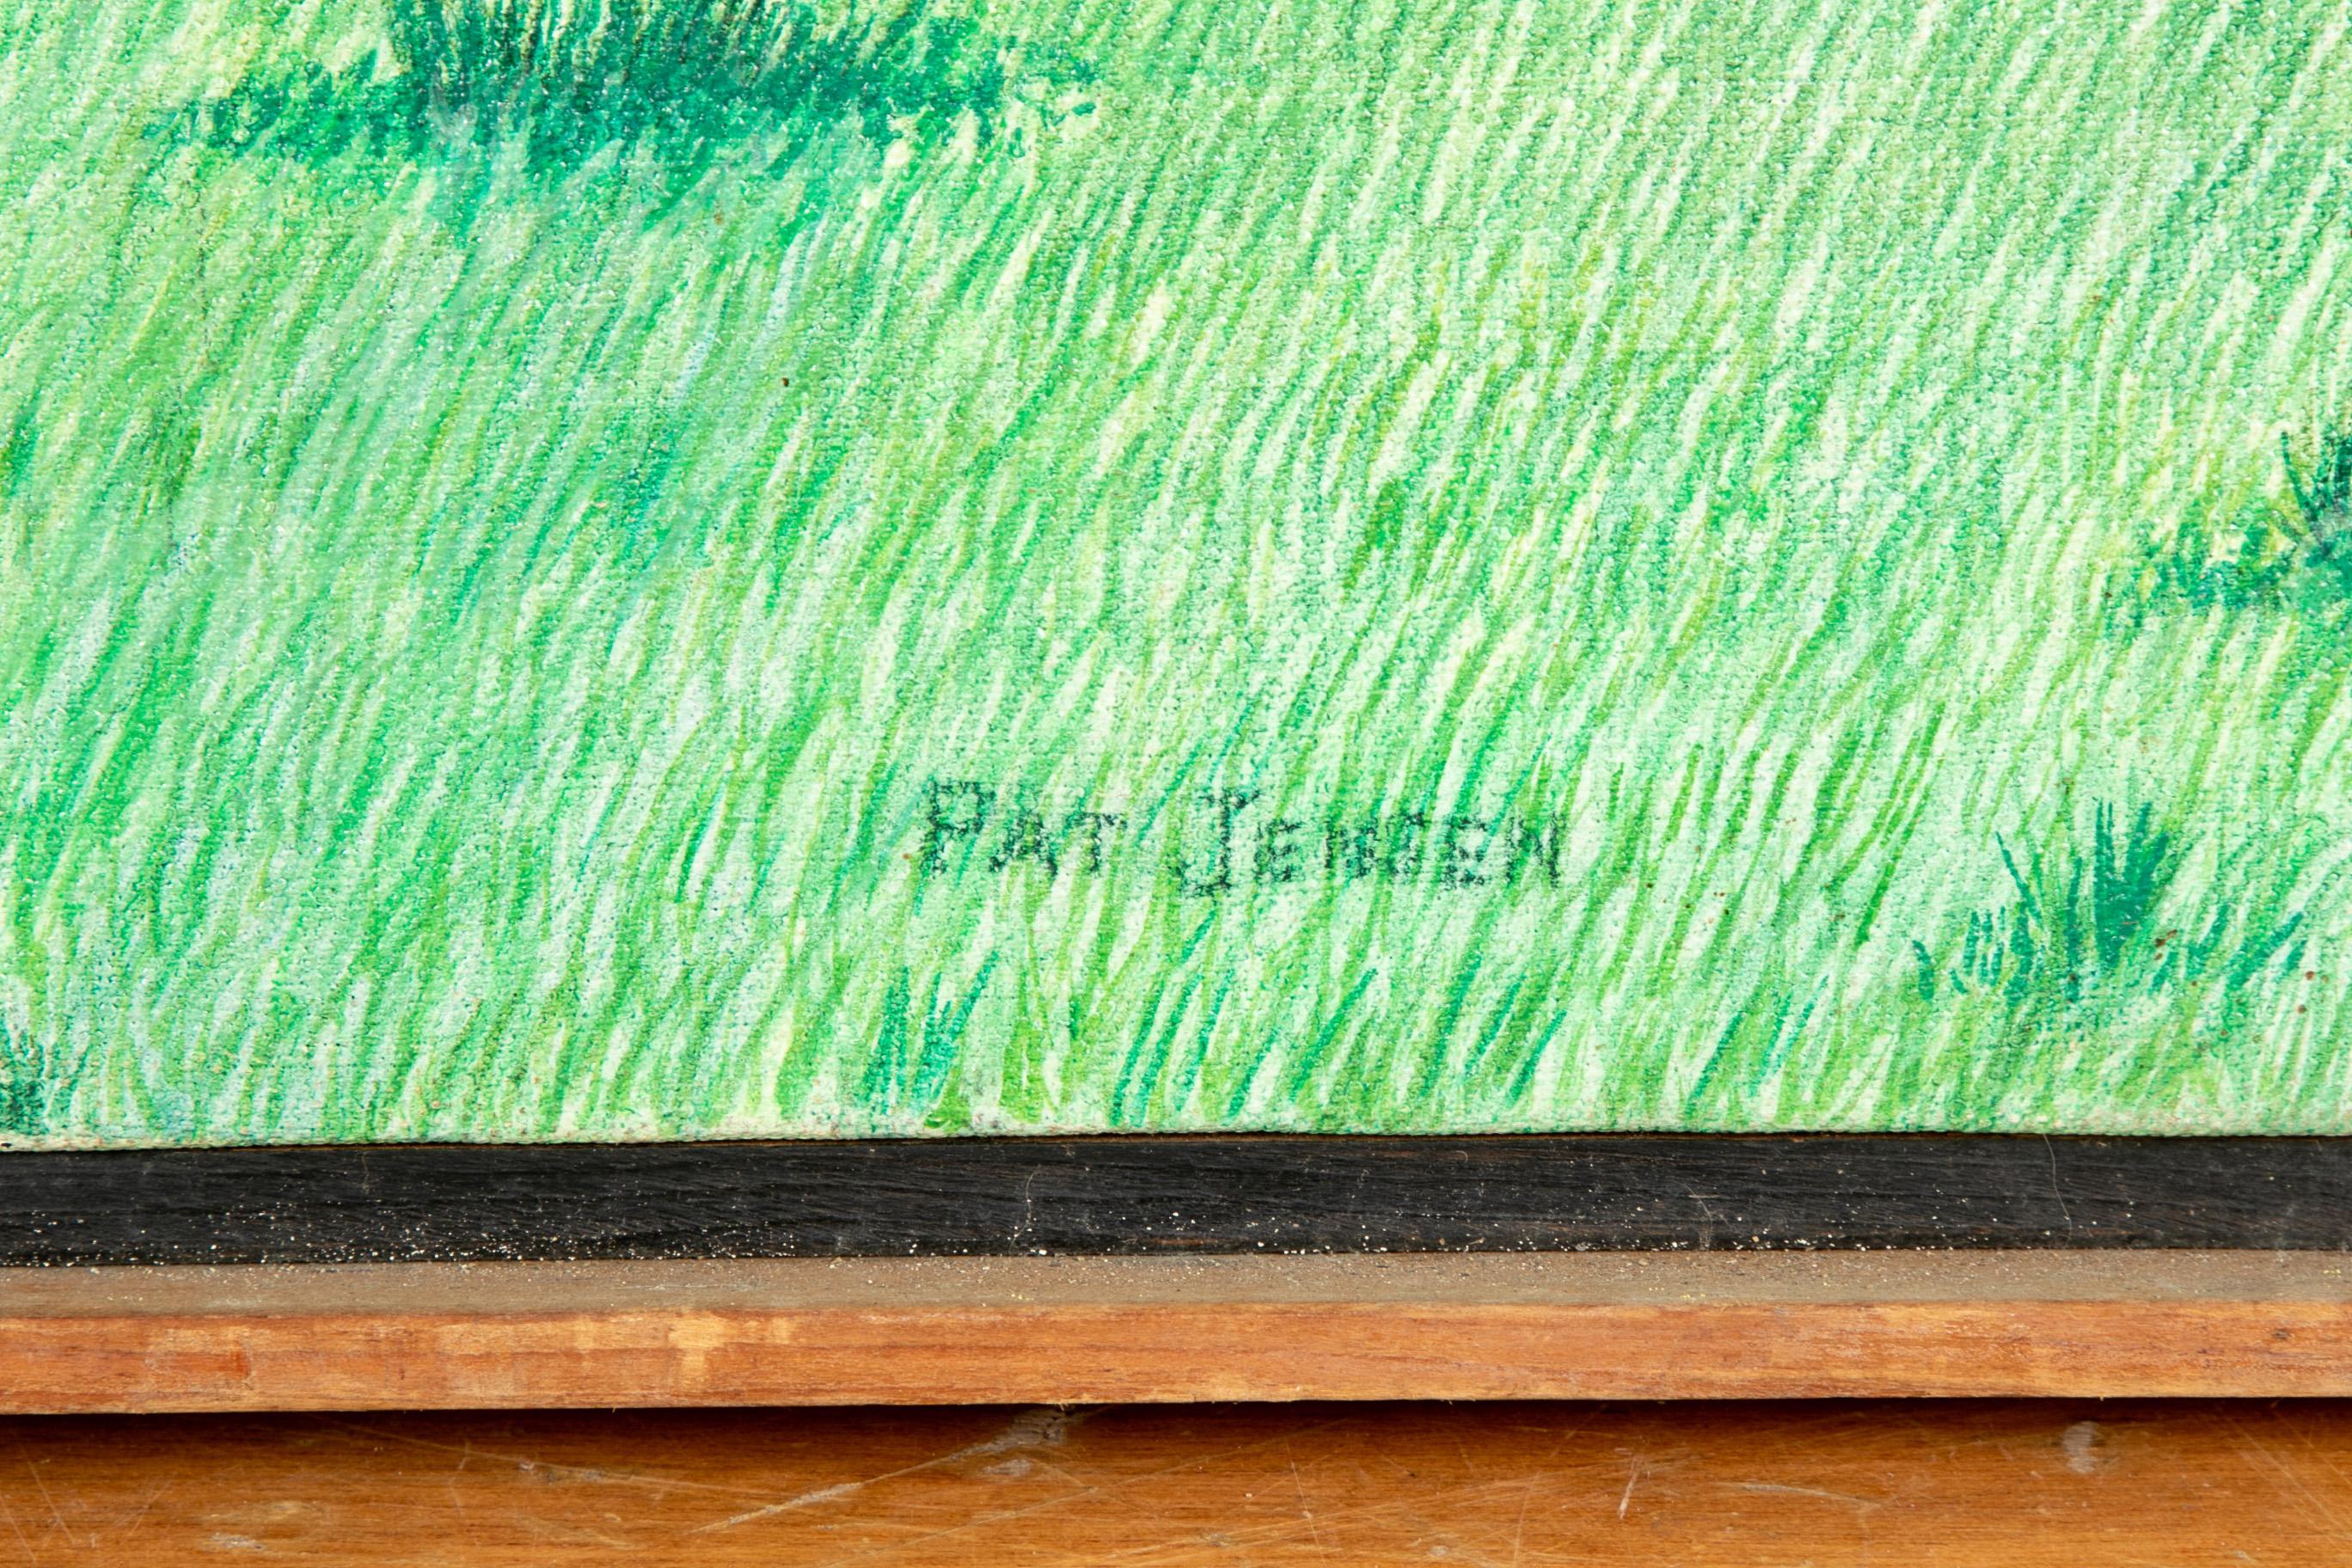 Pat Jensen Oil on Canvas, 